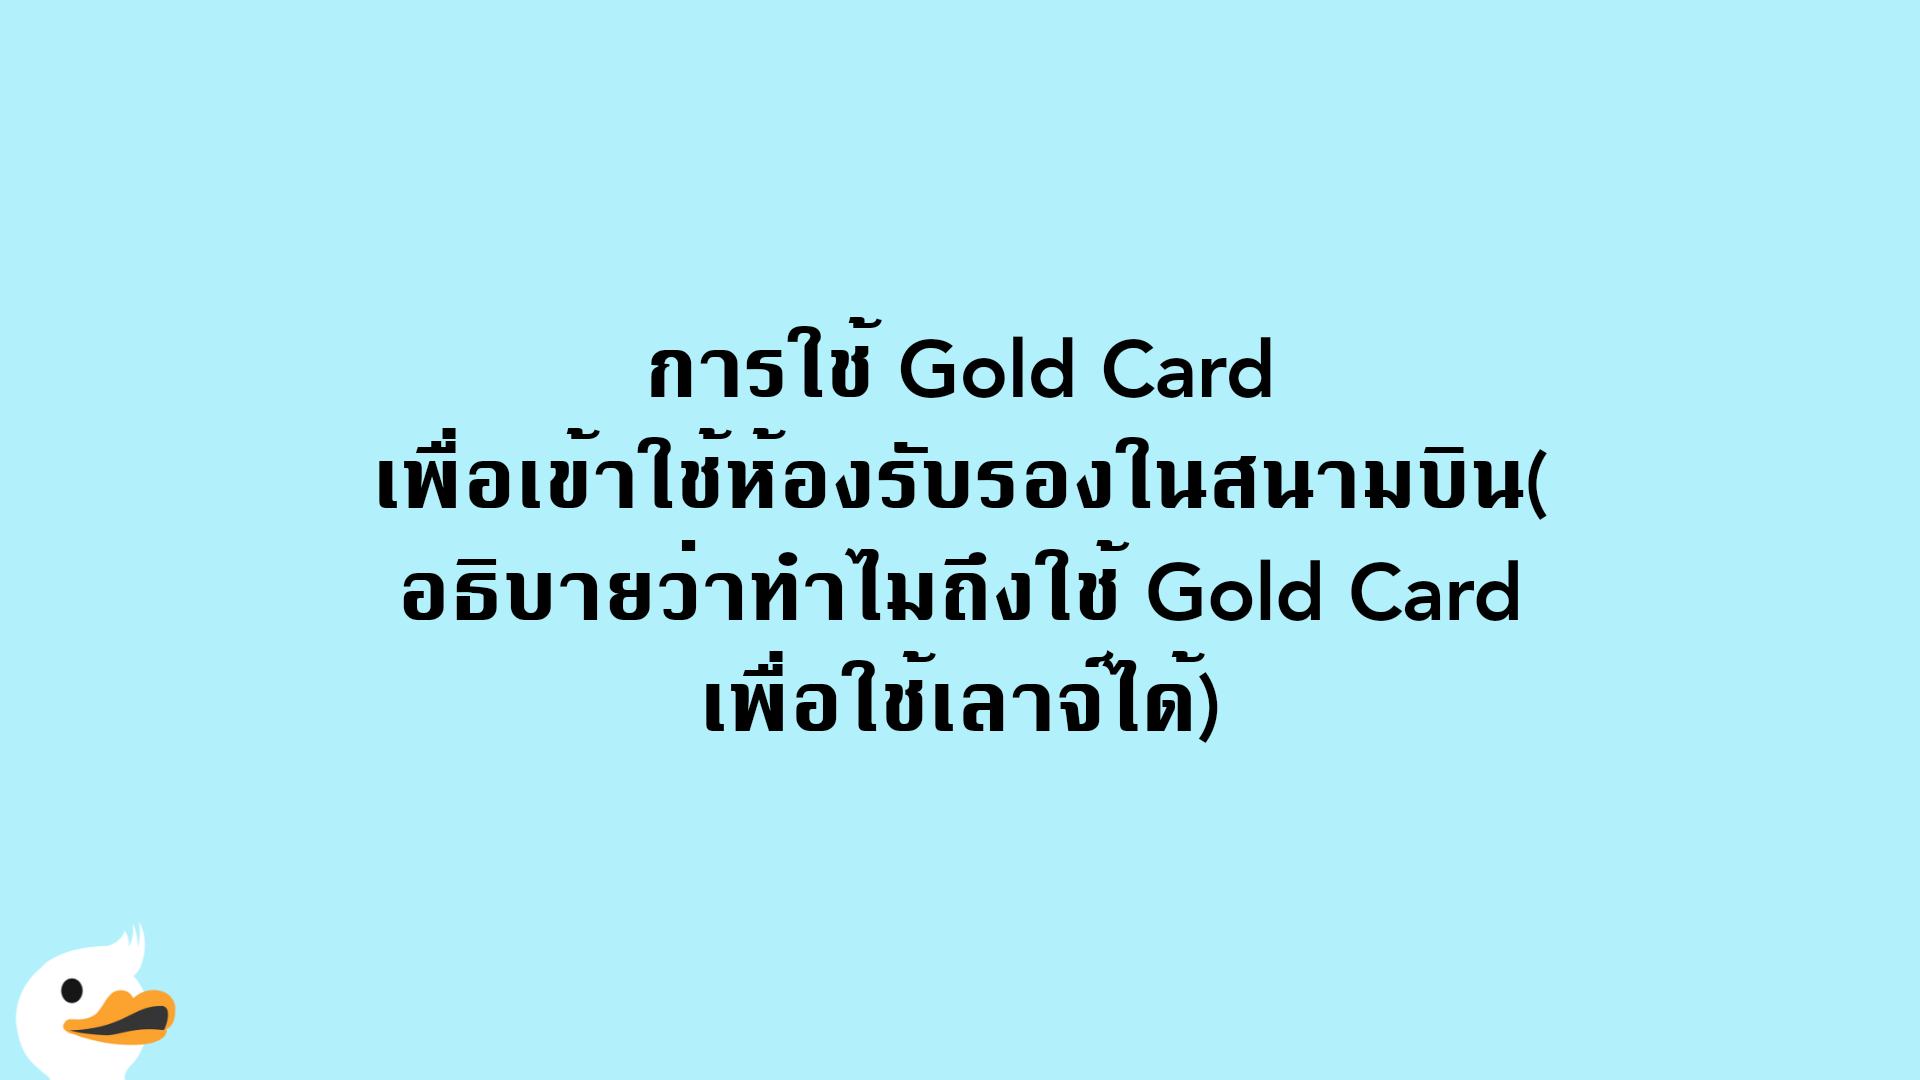 การใช้ Gold Card เพื่อเข้าใช้ห้องรับรองในสนามบิน(อธิบายว่าทำไมถึงใช้ Gold Card เพื่อใช้เลาจ์ได้)